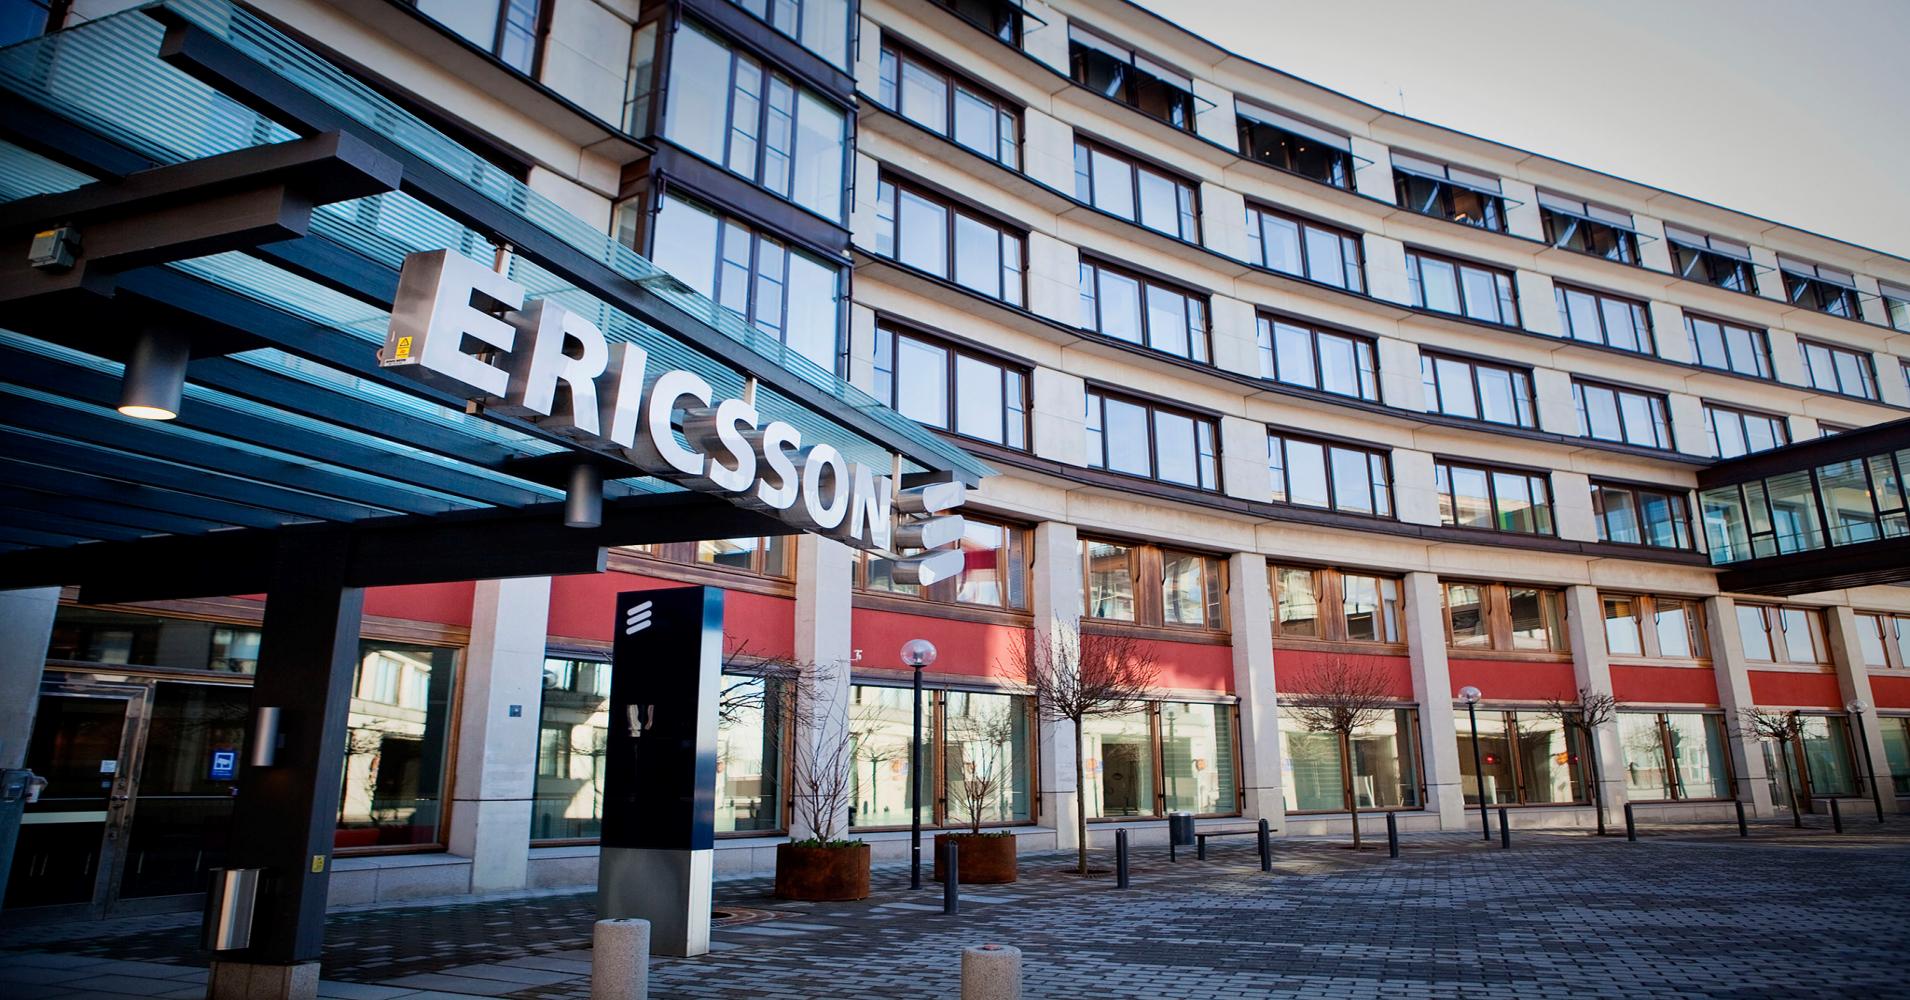 Ericsson se propone automatizar su Customer Journey